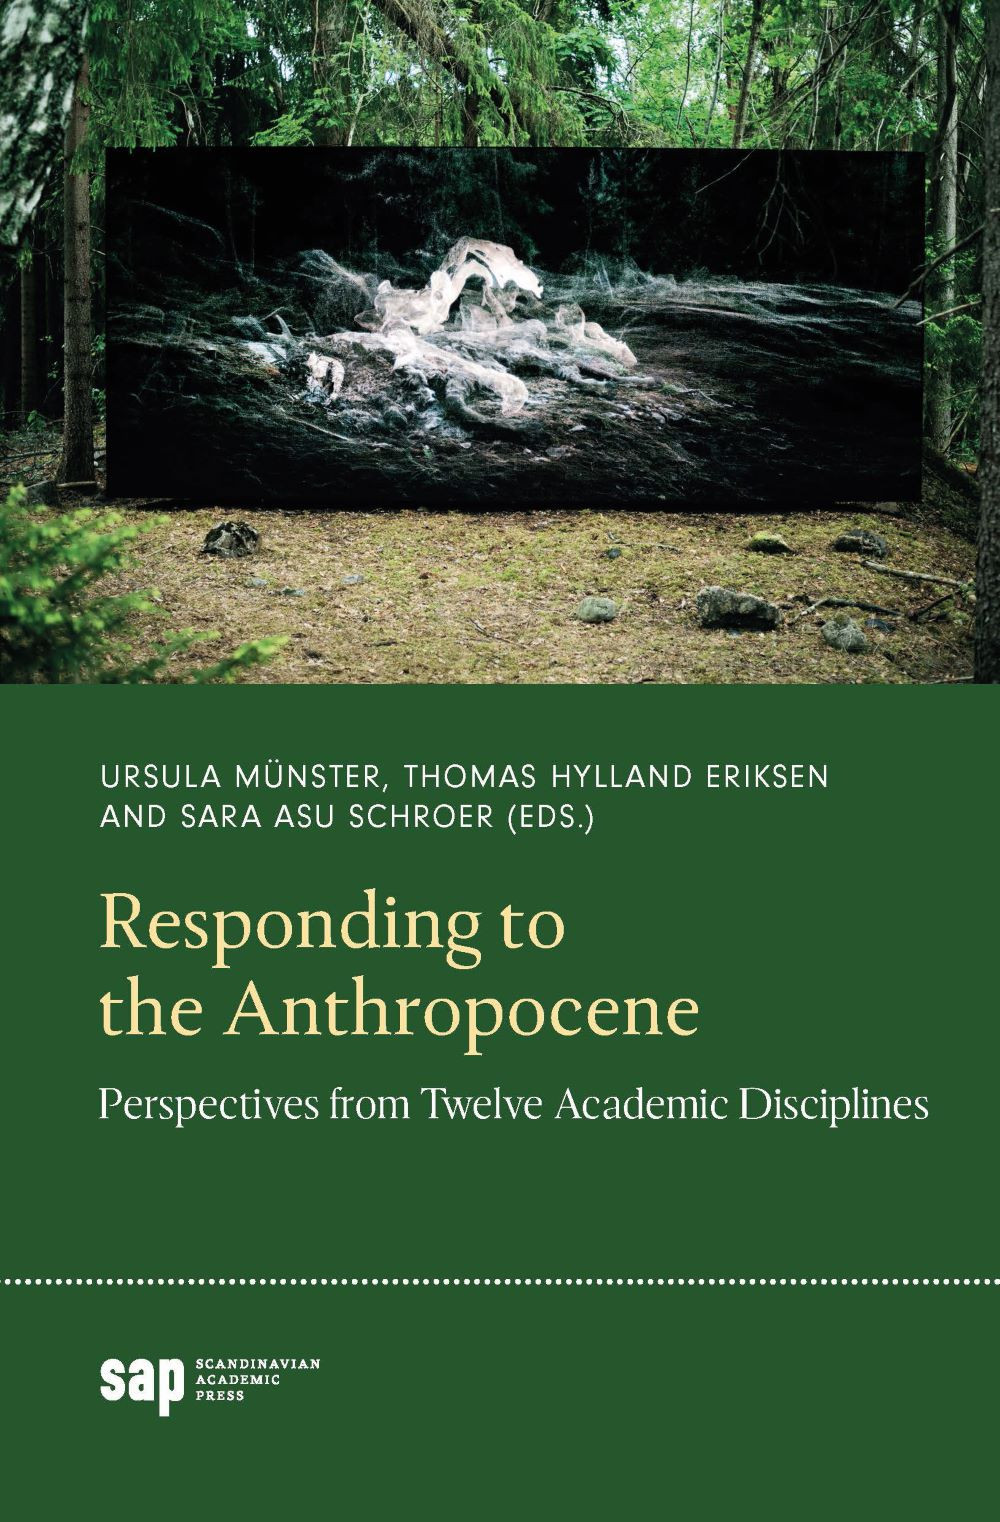 03235 responding to the anthropocene forside (002)